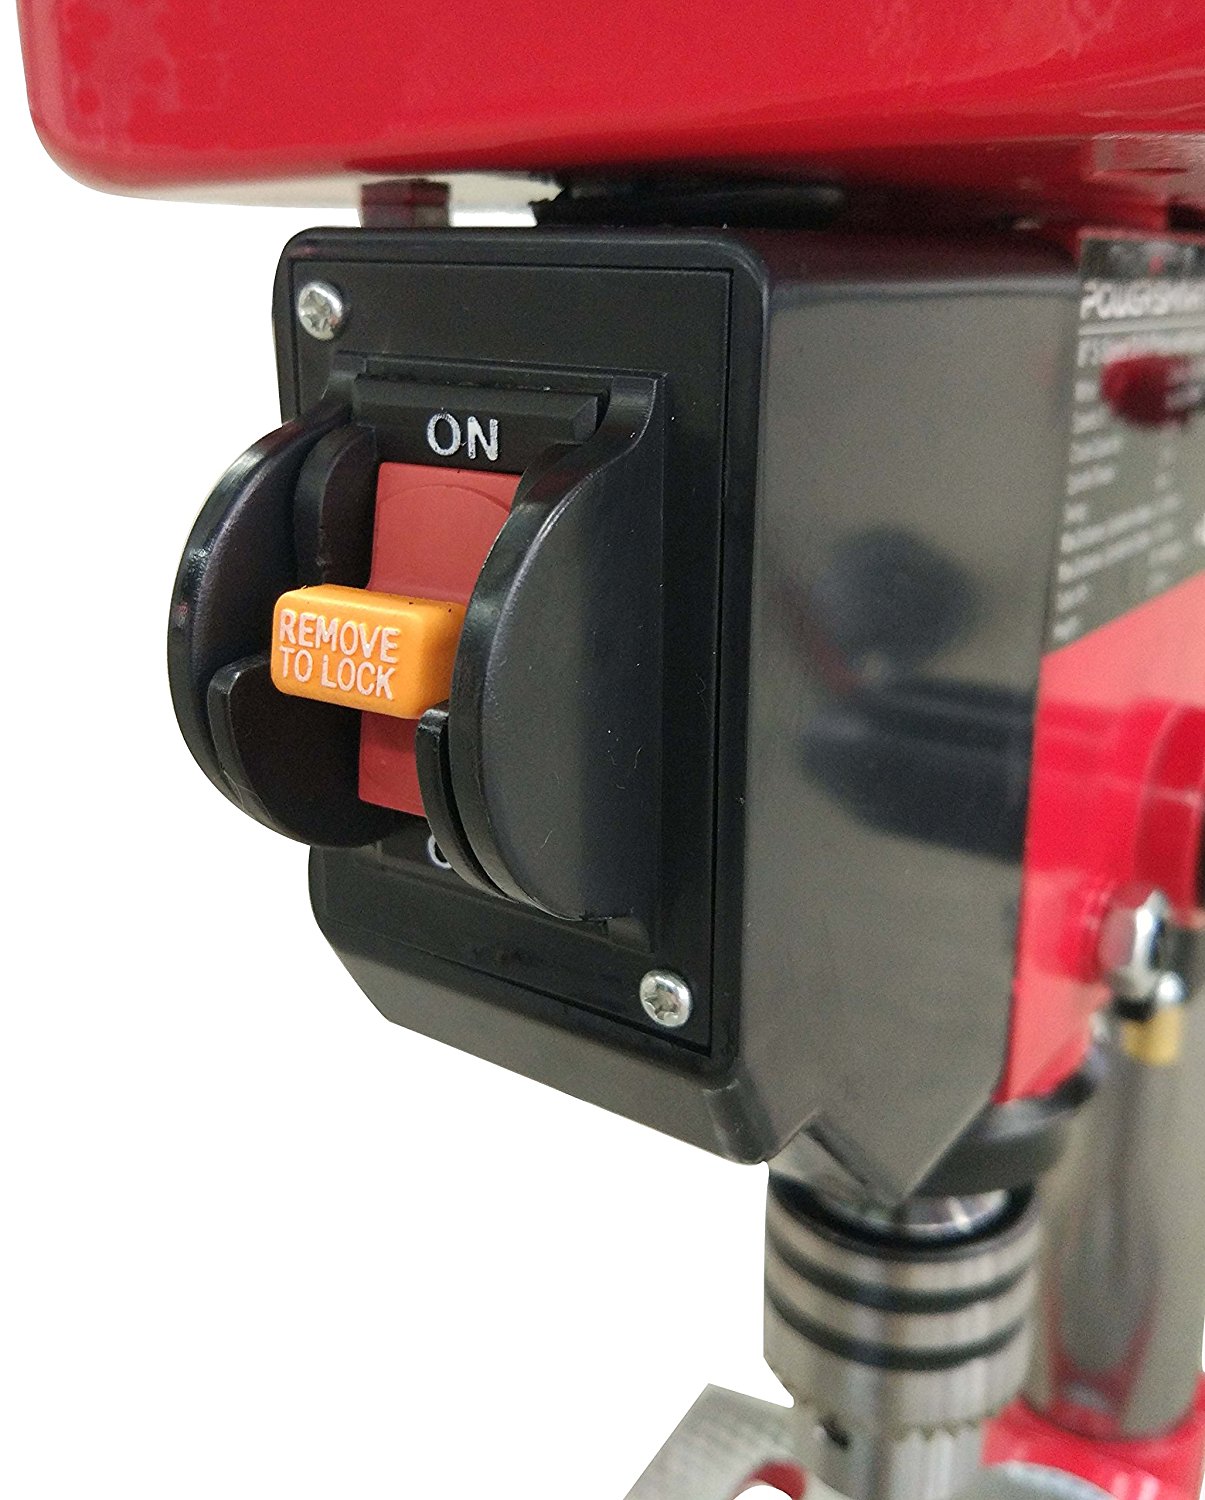 PowerSmart PS308 5-Speed drill press